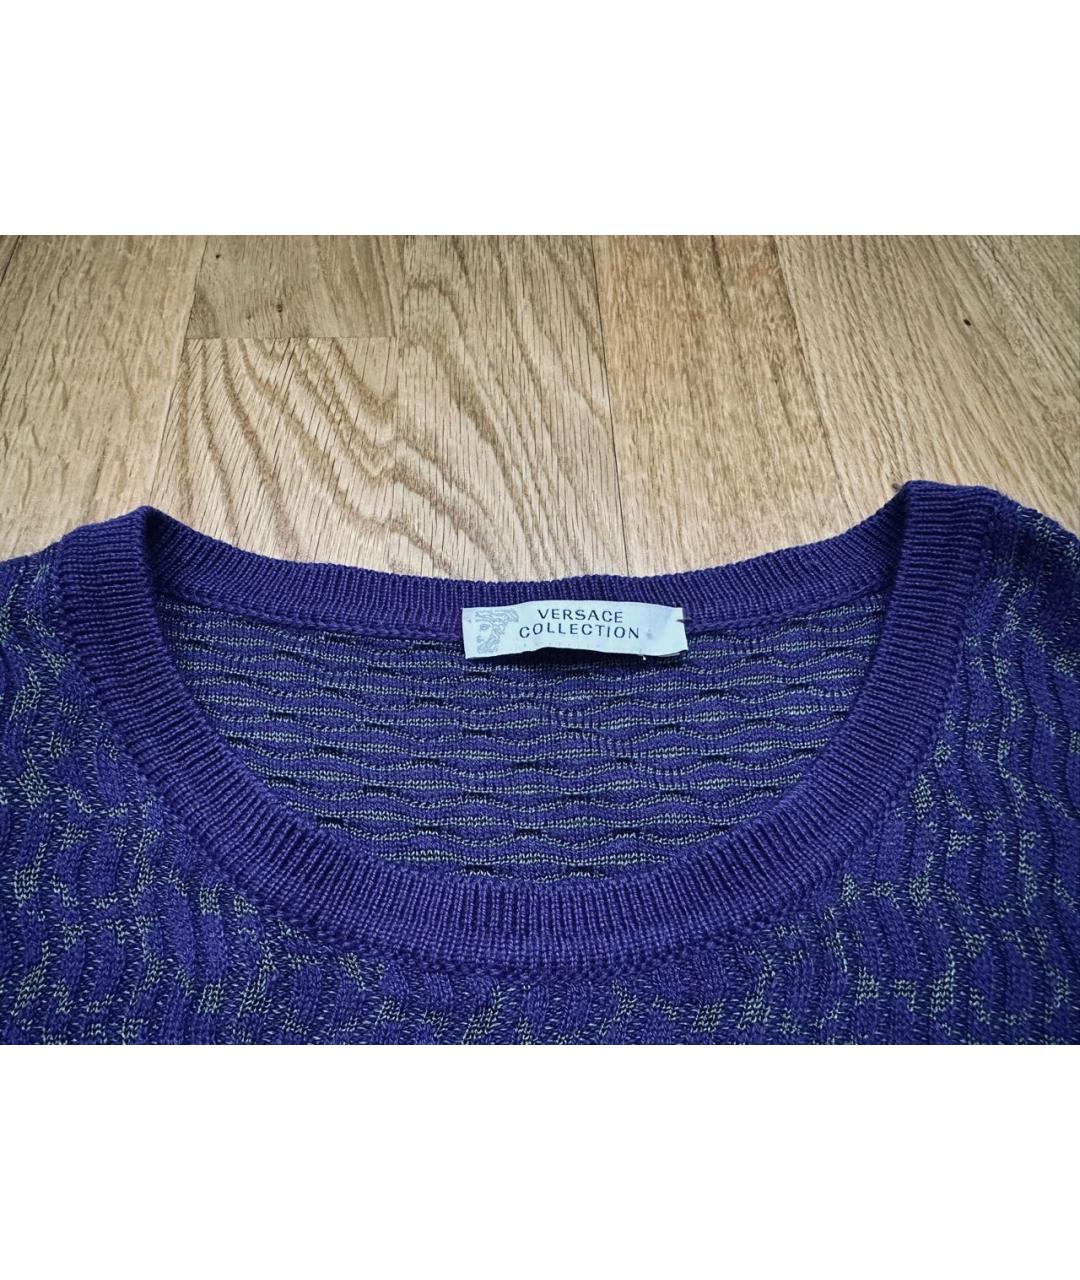 VERSACE COLLECTION Фиолетовый шерстяной джемпер / свитер, фото 3